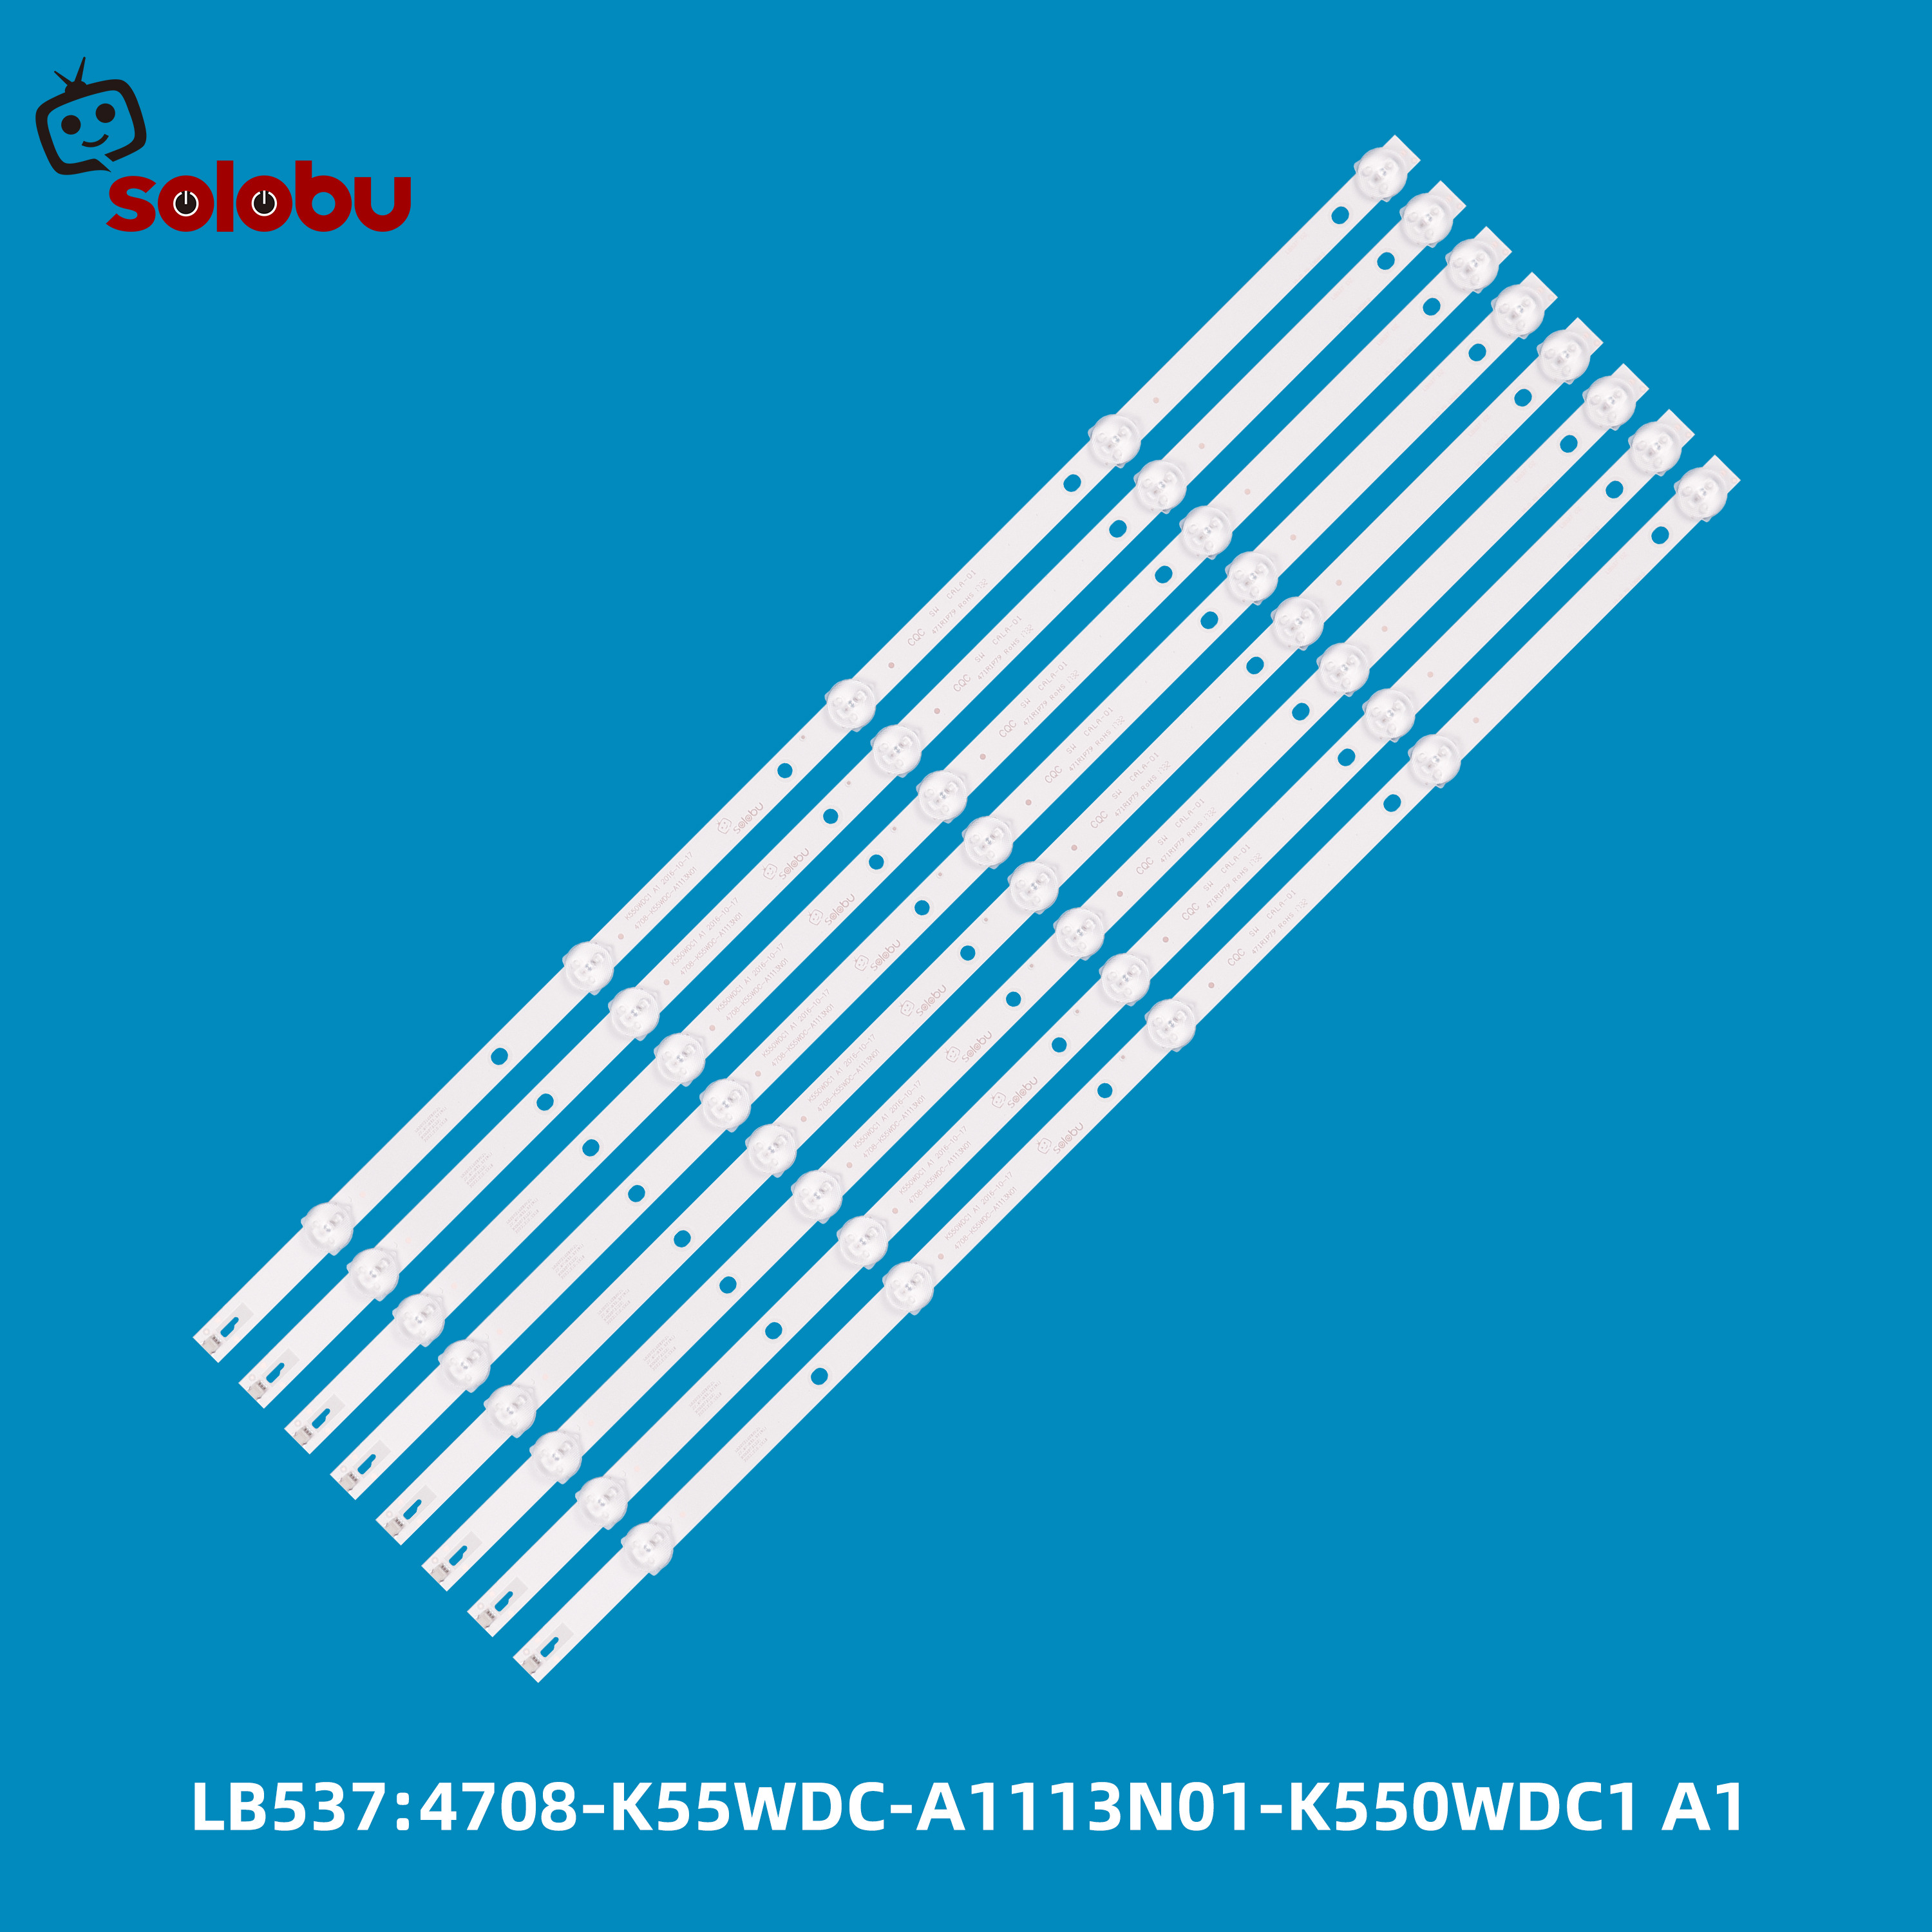 K550WDC1 A1 2016-10-17 4708-K55WDC-A1113N01-K550WDC1 A1 A2